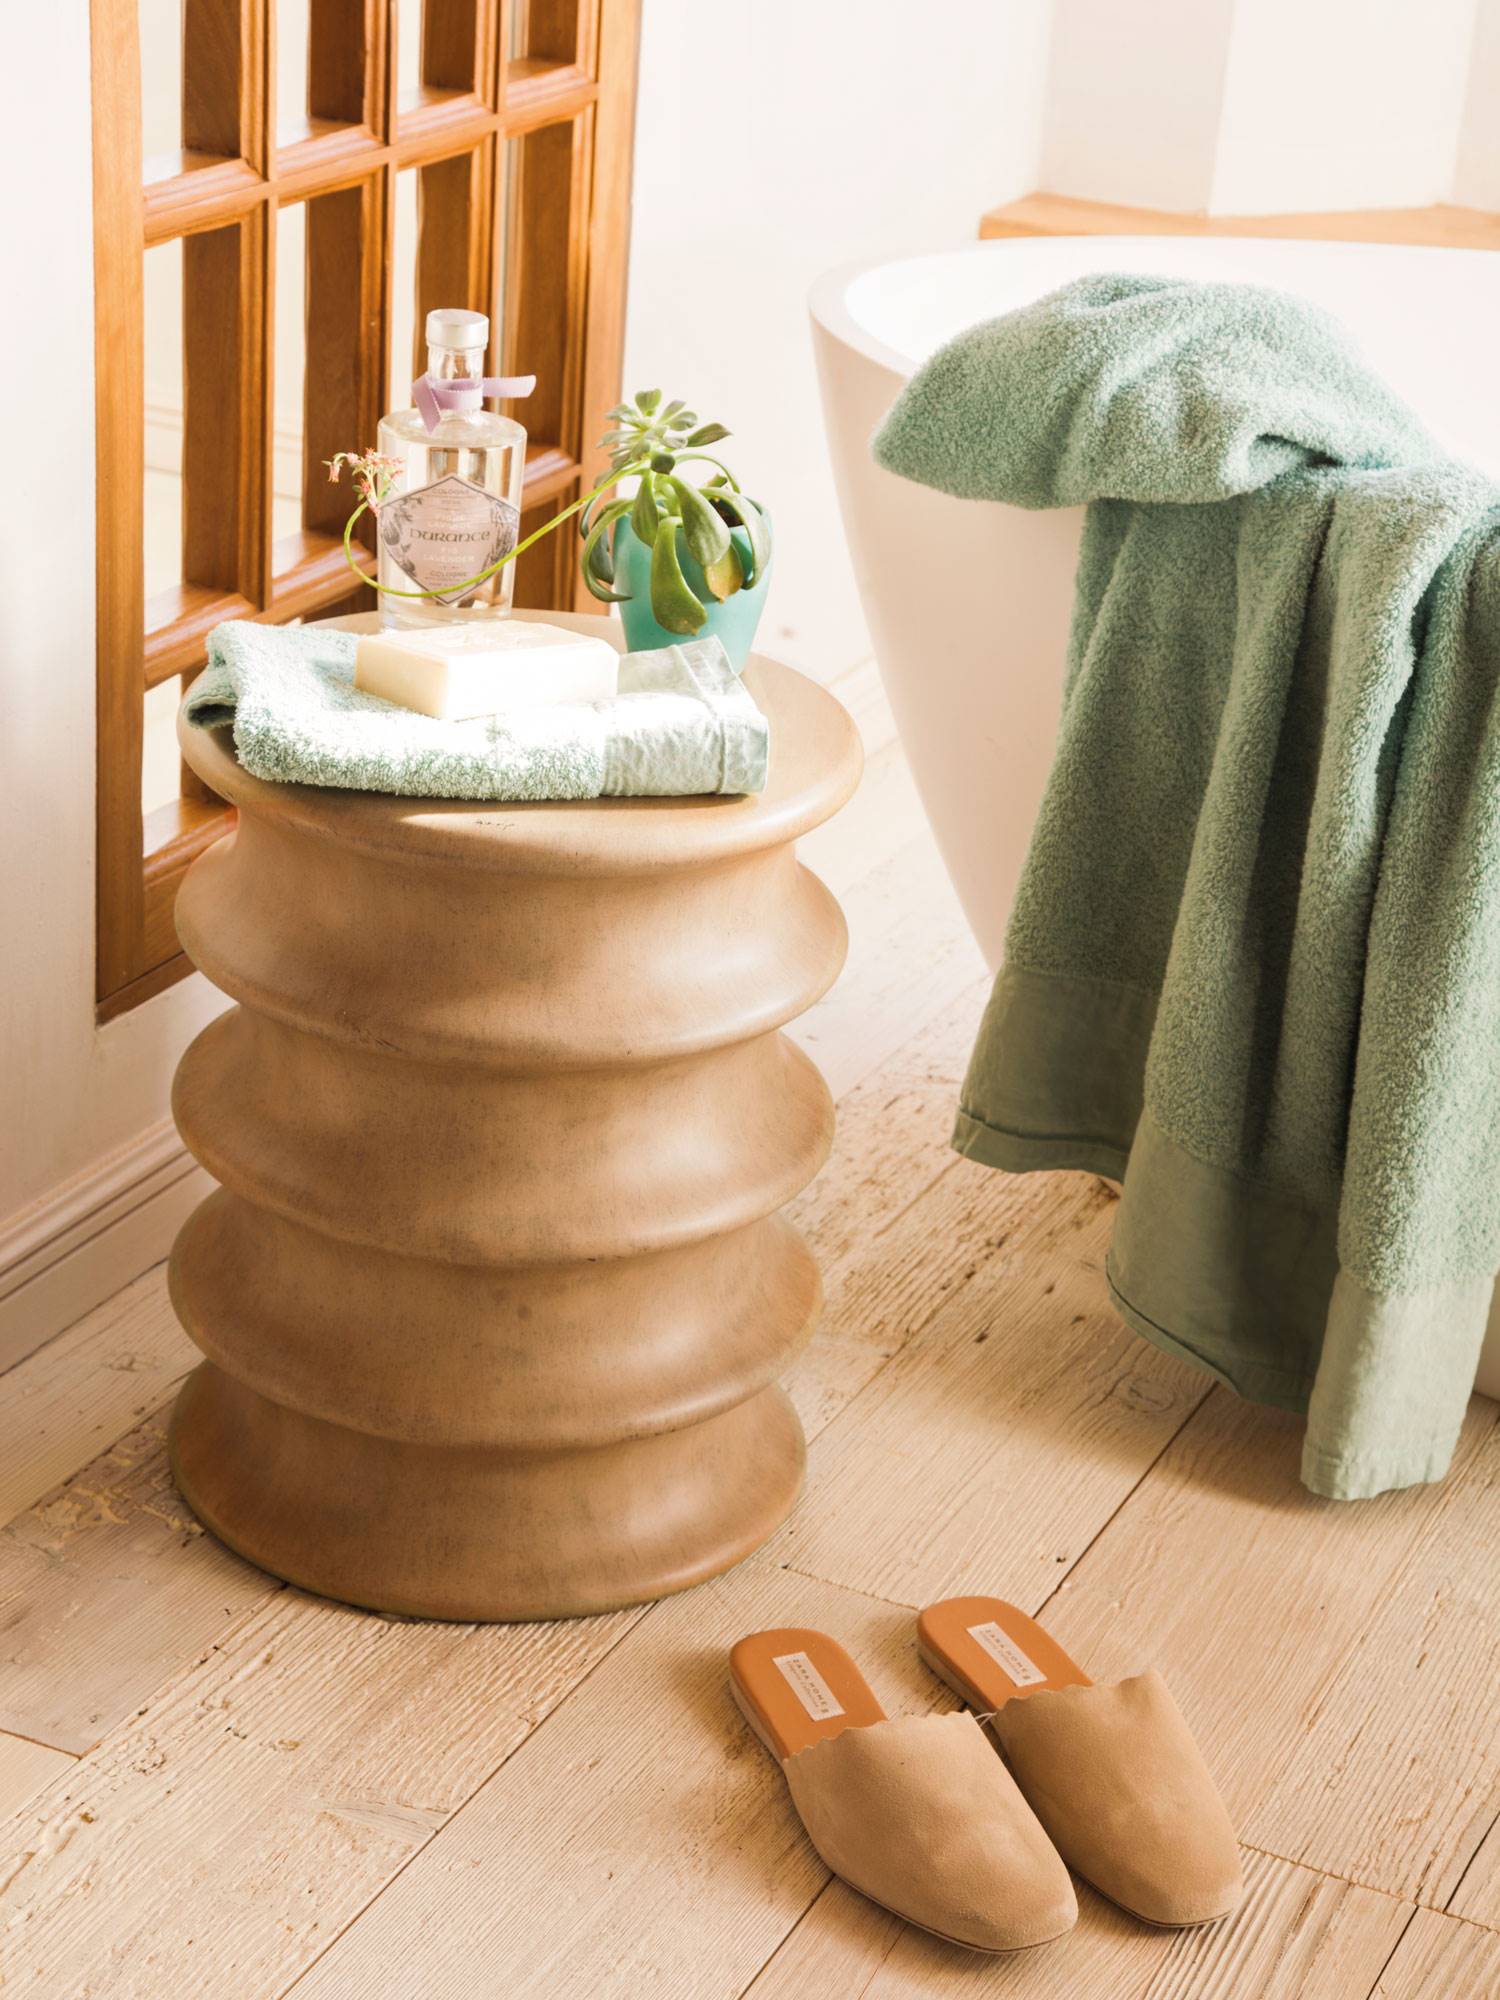 Baño con detalle decorativo para poner toallas, perfumes y una pequeña planta.